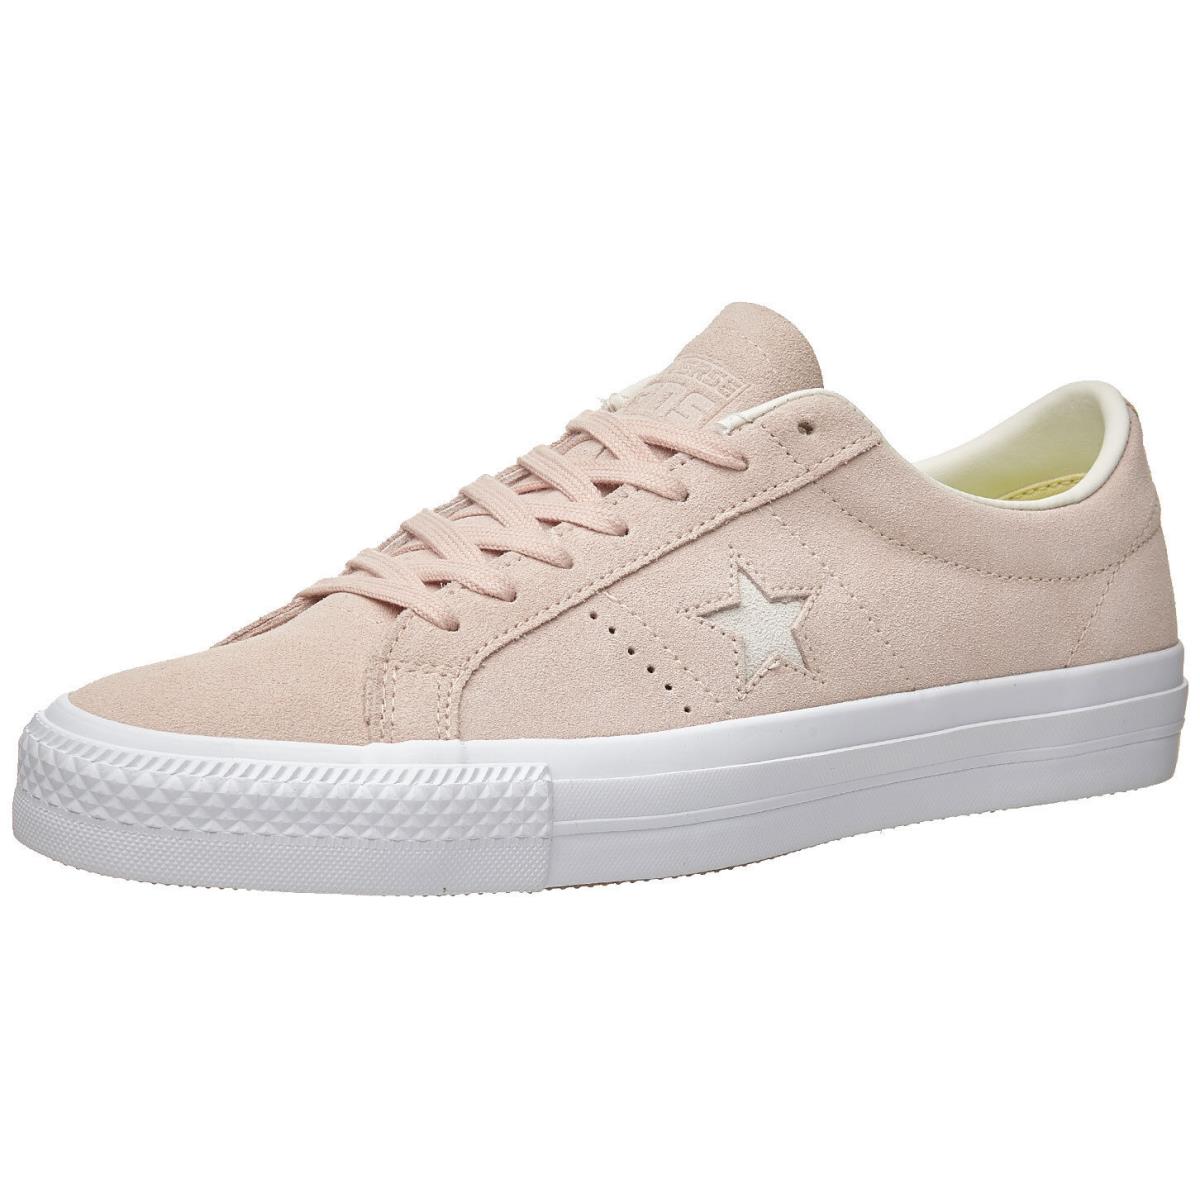 Converse One Star Pro OX Dusk Pink Egret White 157892C Unisex 159 Men`s Shoes